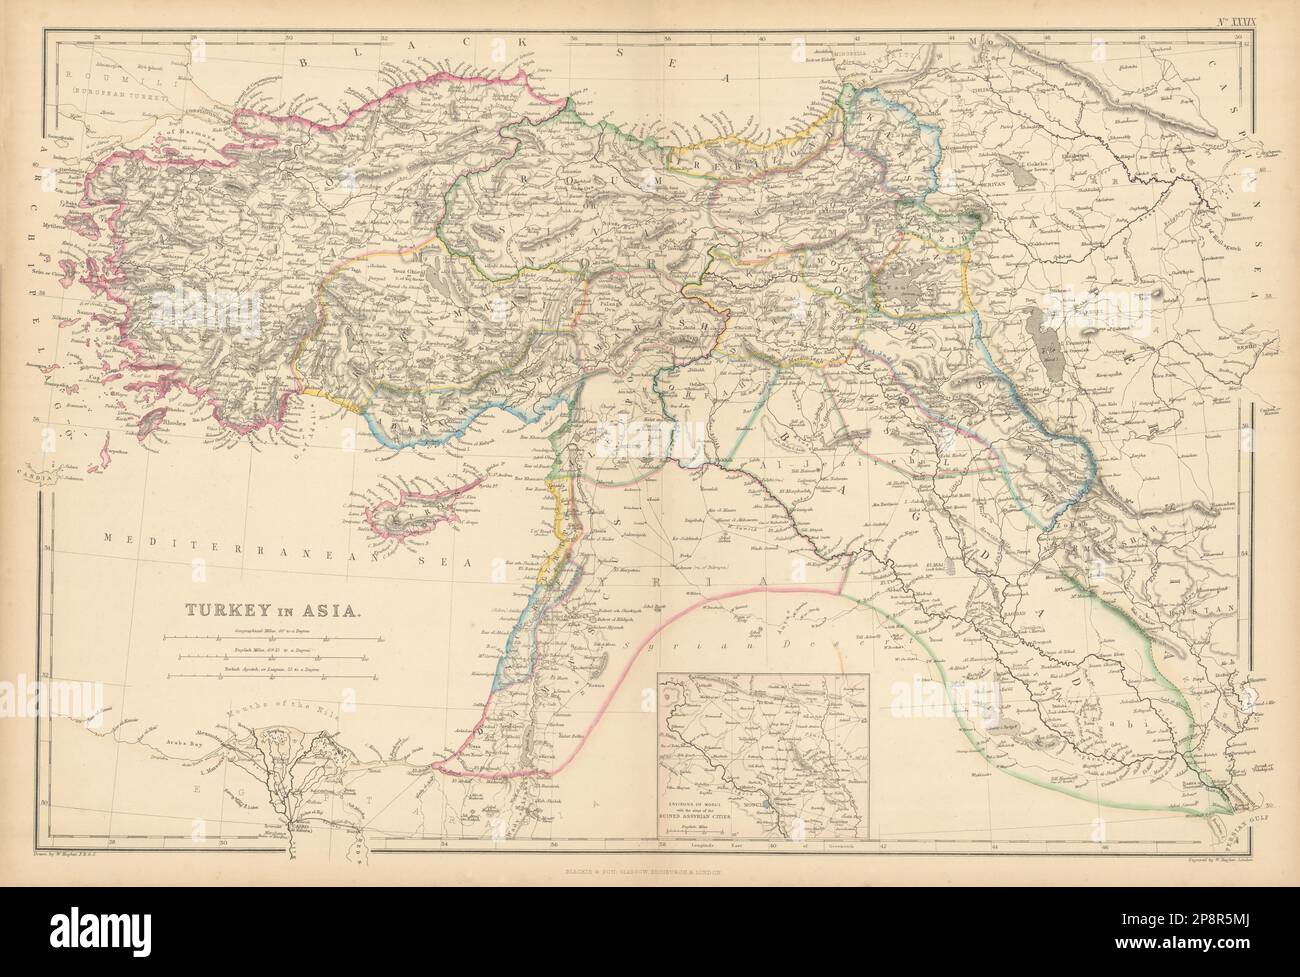 Die Türkei in Asien. Assyrische Städte In Mosul. Koordistan/Kurdistan. HUGHES 1859 Karte Stockfoto